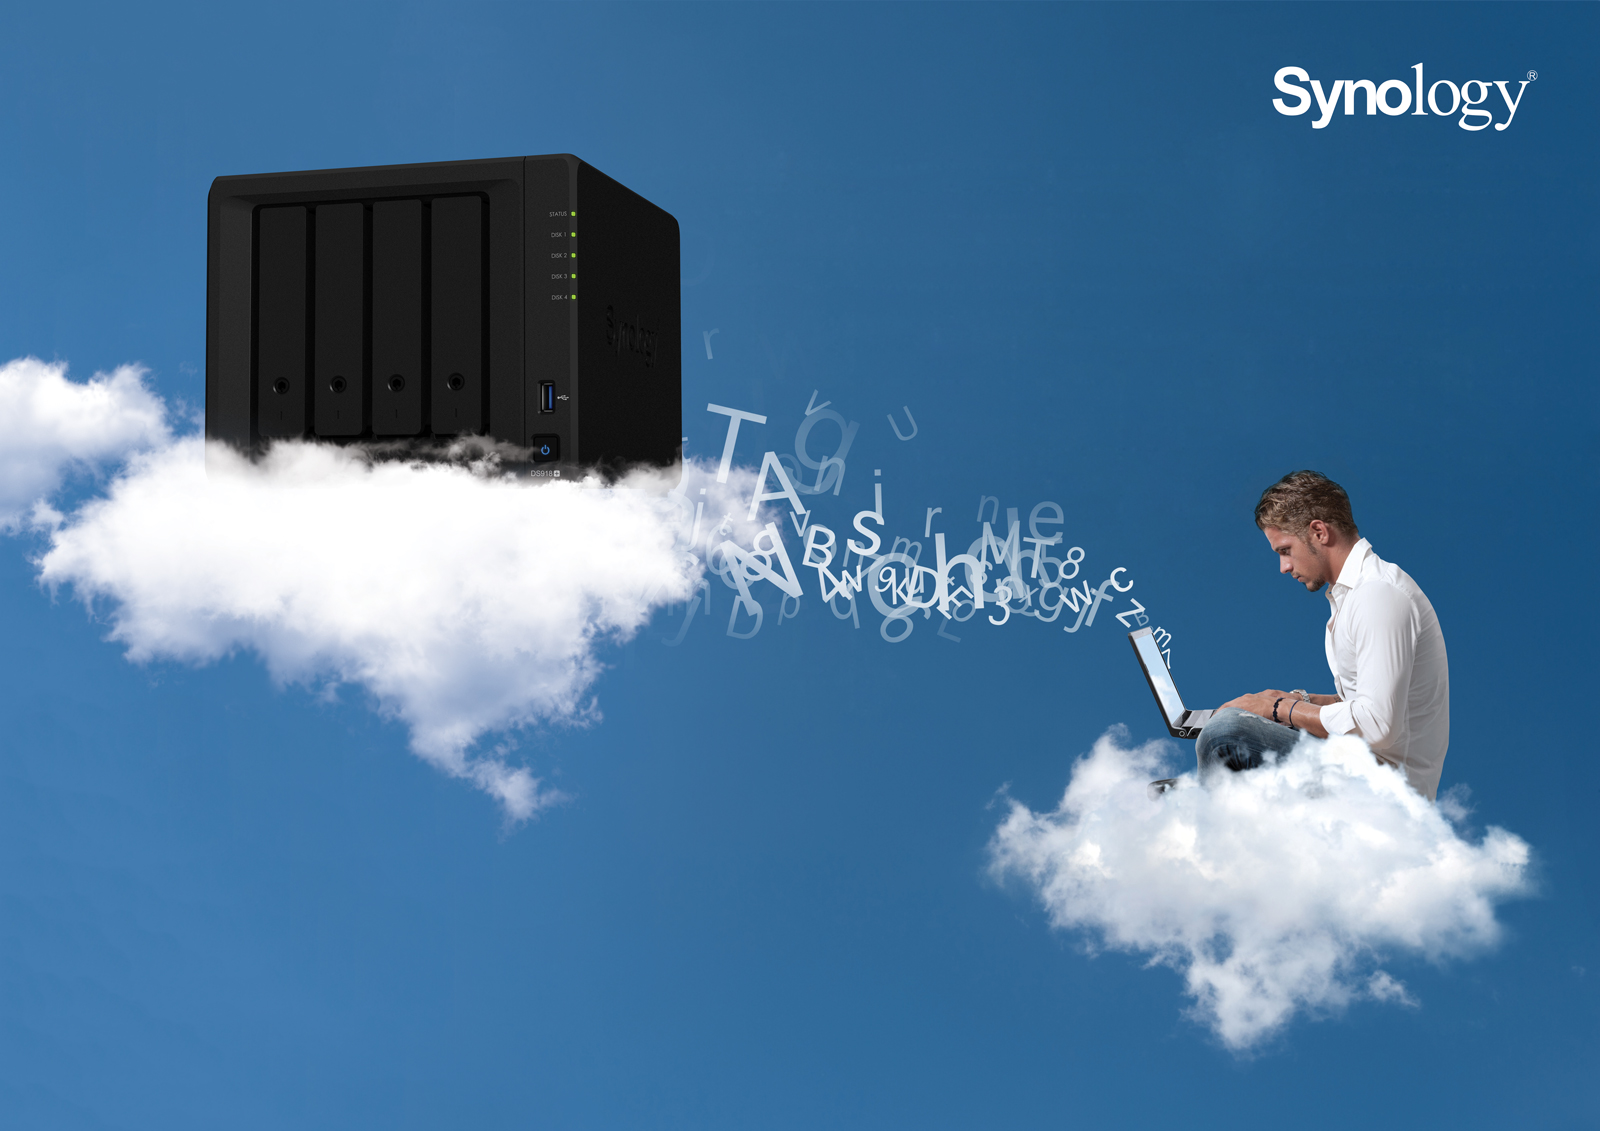 PORADNIK: Synology C2, czyli łatwy backup danych z dysku NAS do chmury